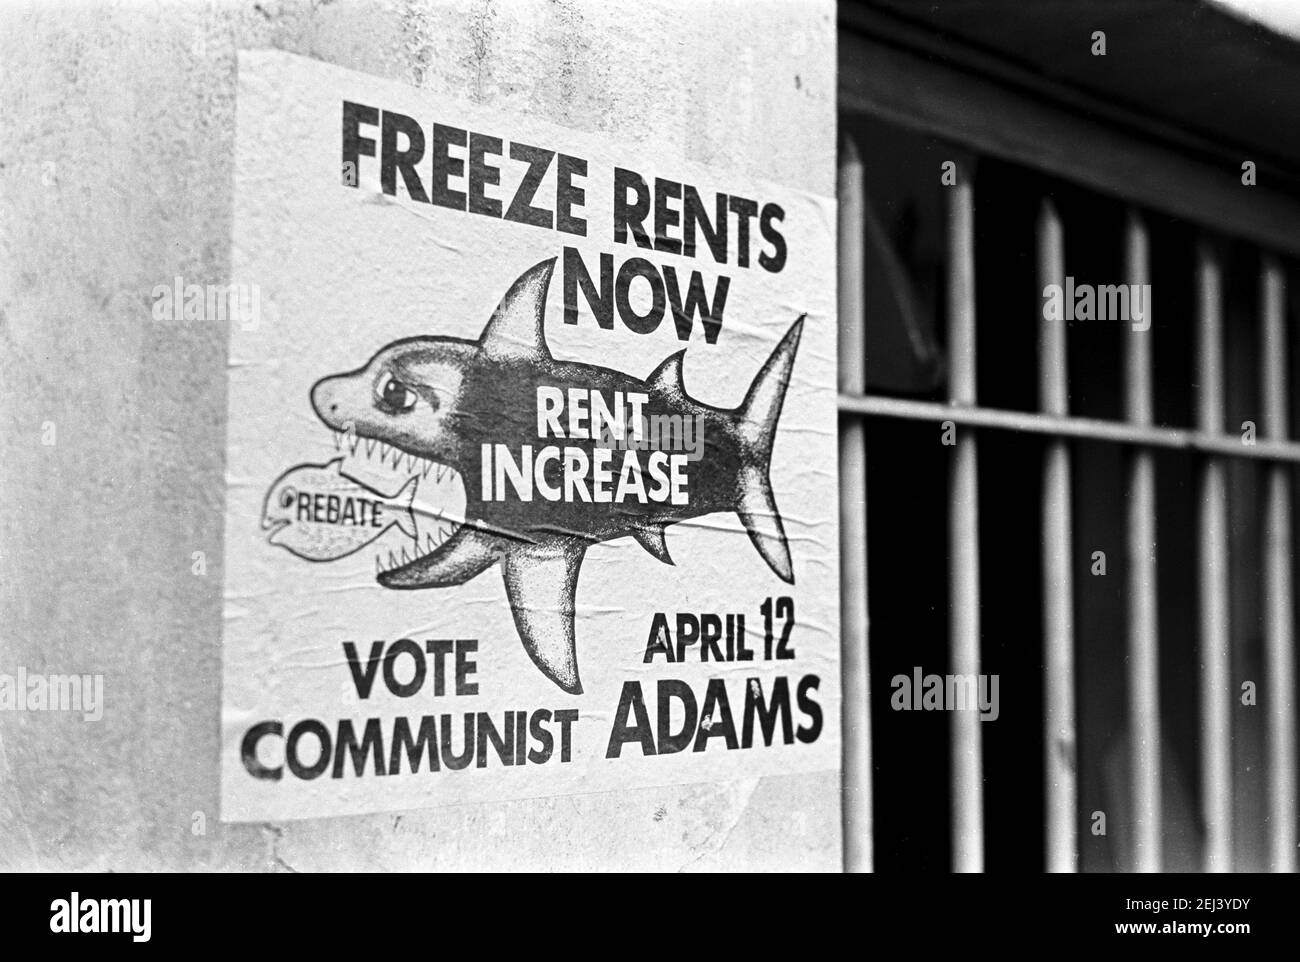 Großbritannien, West London, Notting Hill, 1973. Heruntergekommene und heruntergekommene, große, vierstöckige Häuser werden langsam restauriert und neu dekoriert. Dieses Poster sagt 'Freeze Rents Now - Vote Communist'. Stockfoto